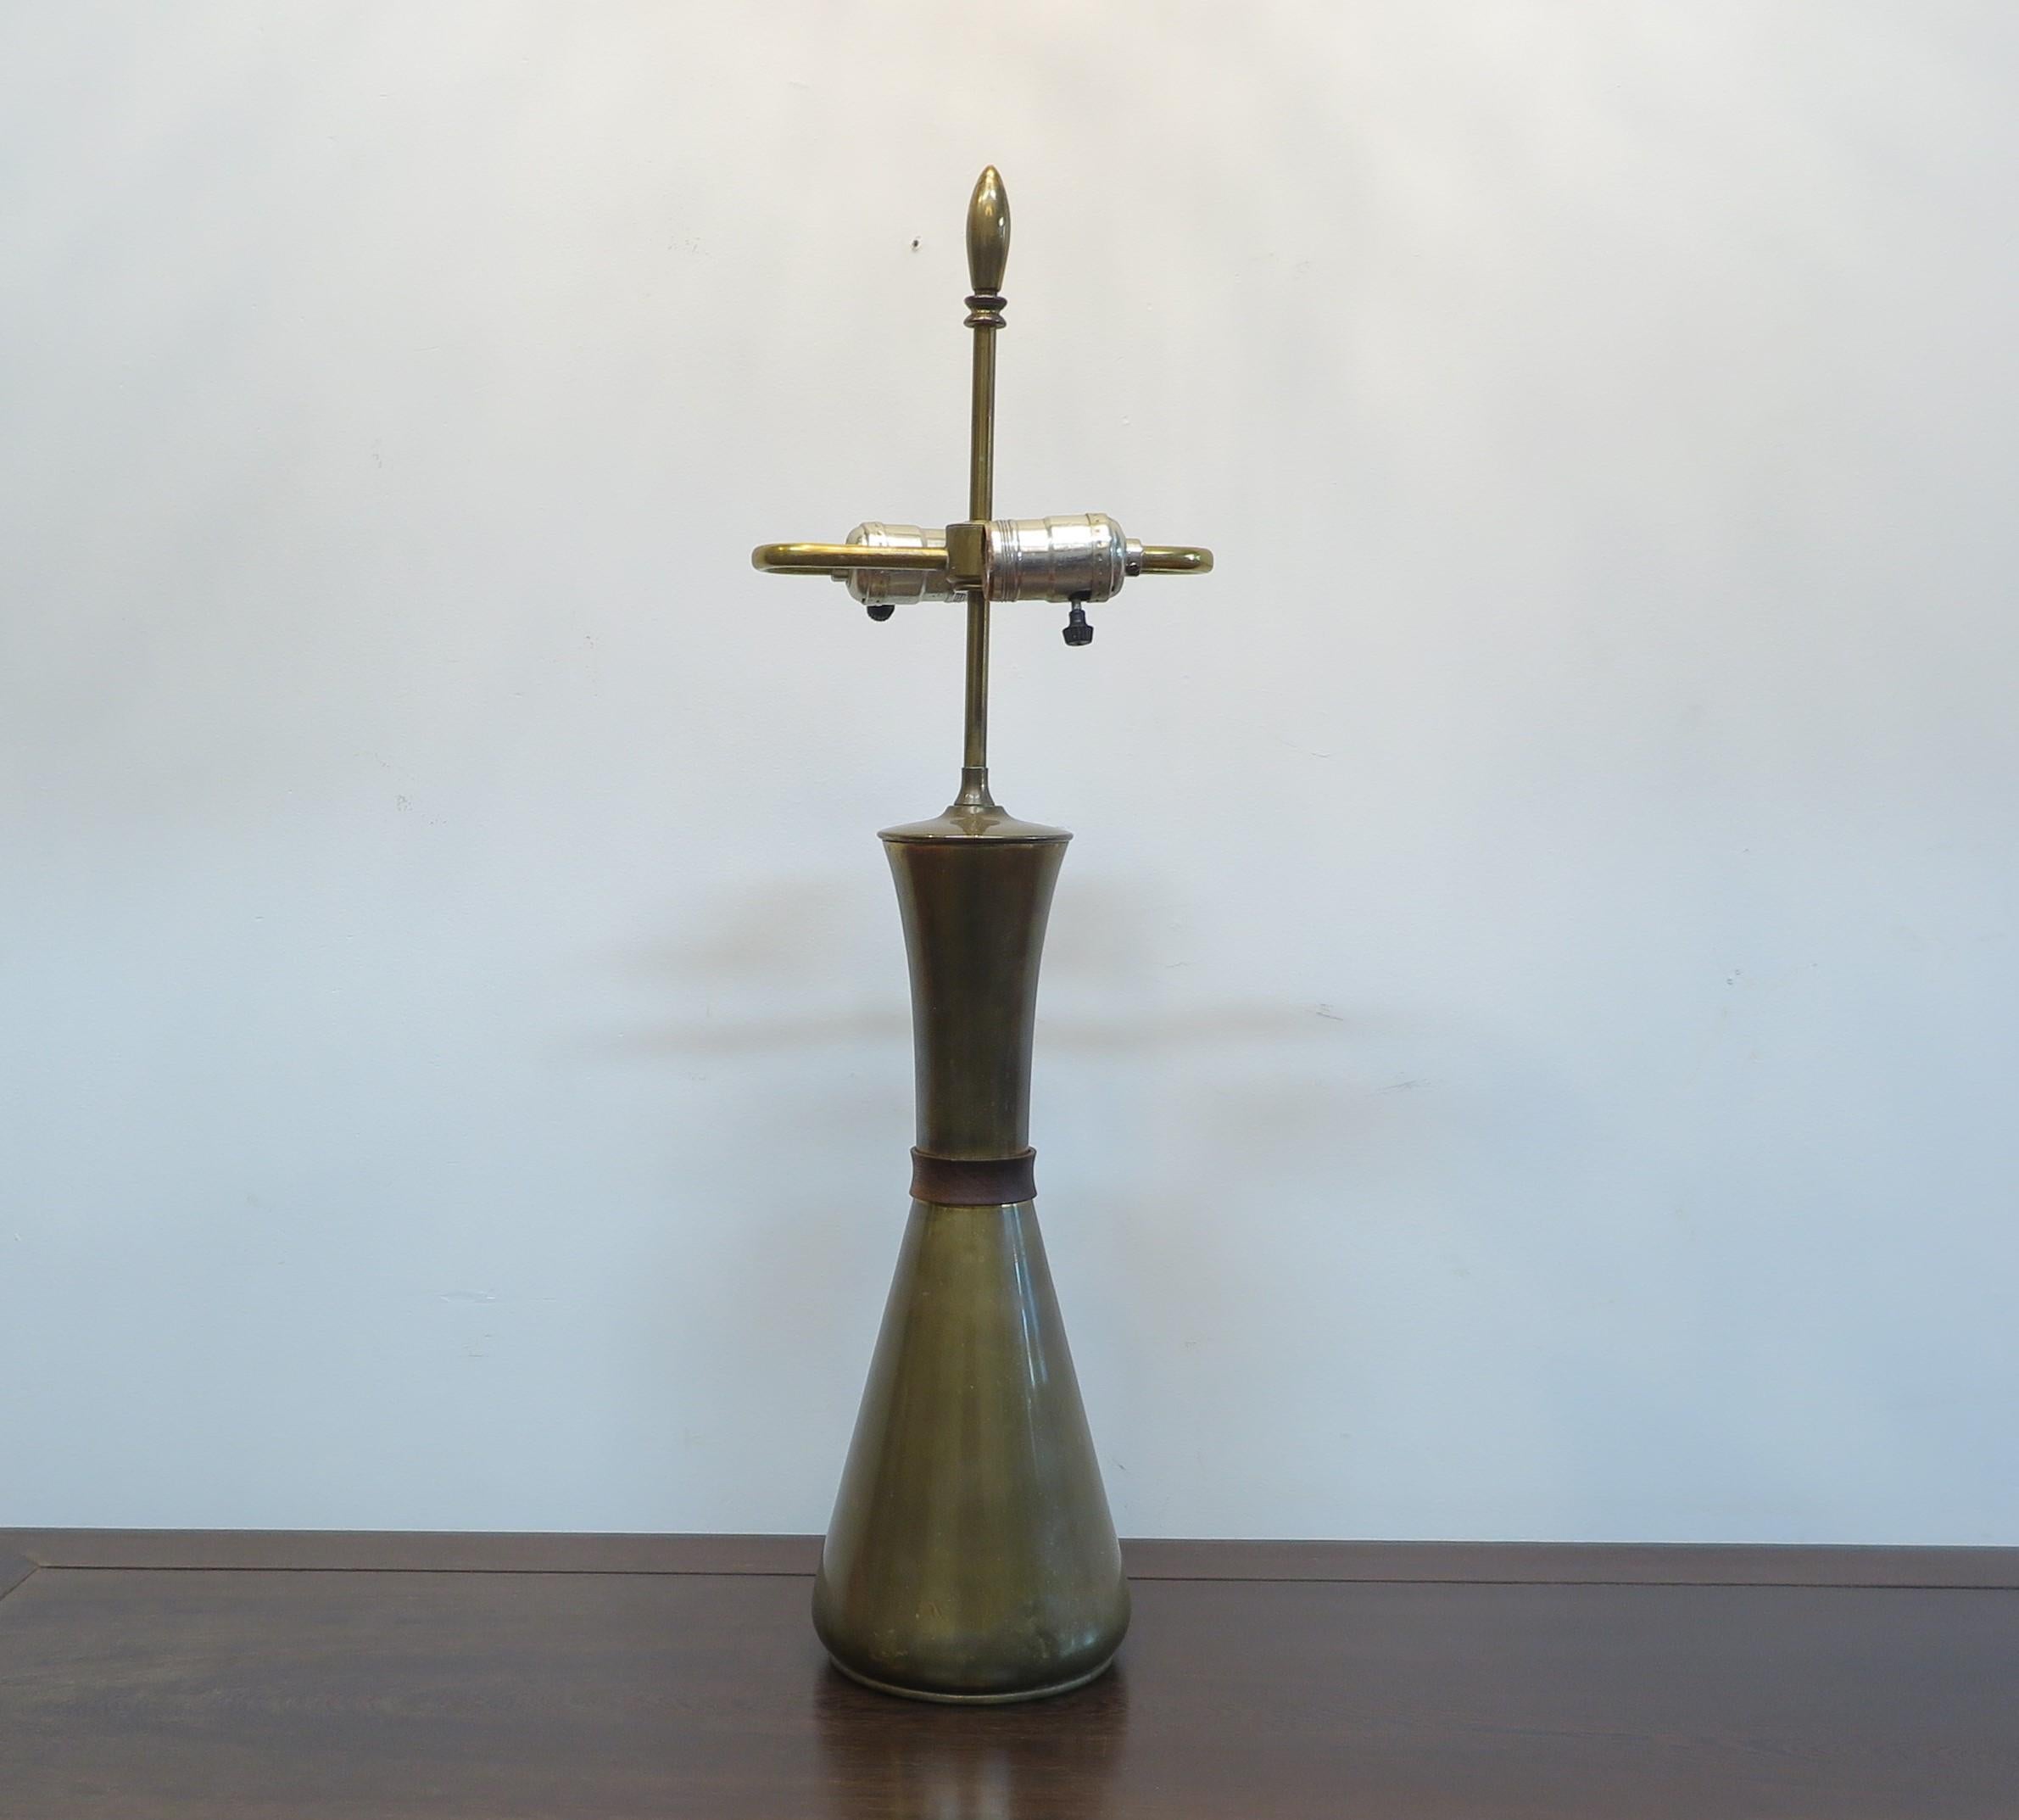 Mid Century Modern Brass Hour Glass Shaped Table Lamp.  Mid Century Messing Tischlampe in der Form einer Sanduhr mit Teakholz Detail in der Mitte.  Die Oberseite ist im Durchmesser schmaler als die Unterseite.  Das Messing hat eine warme,